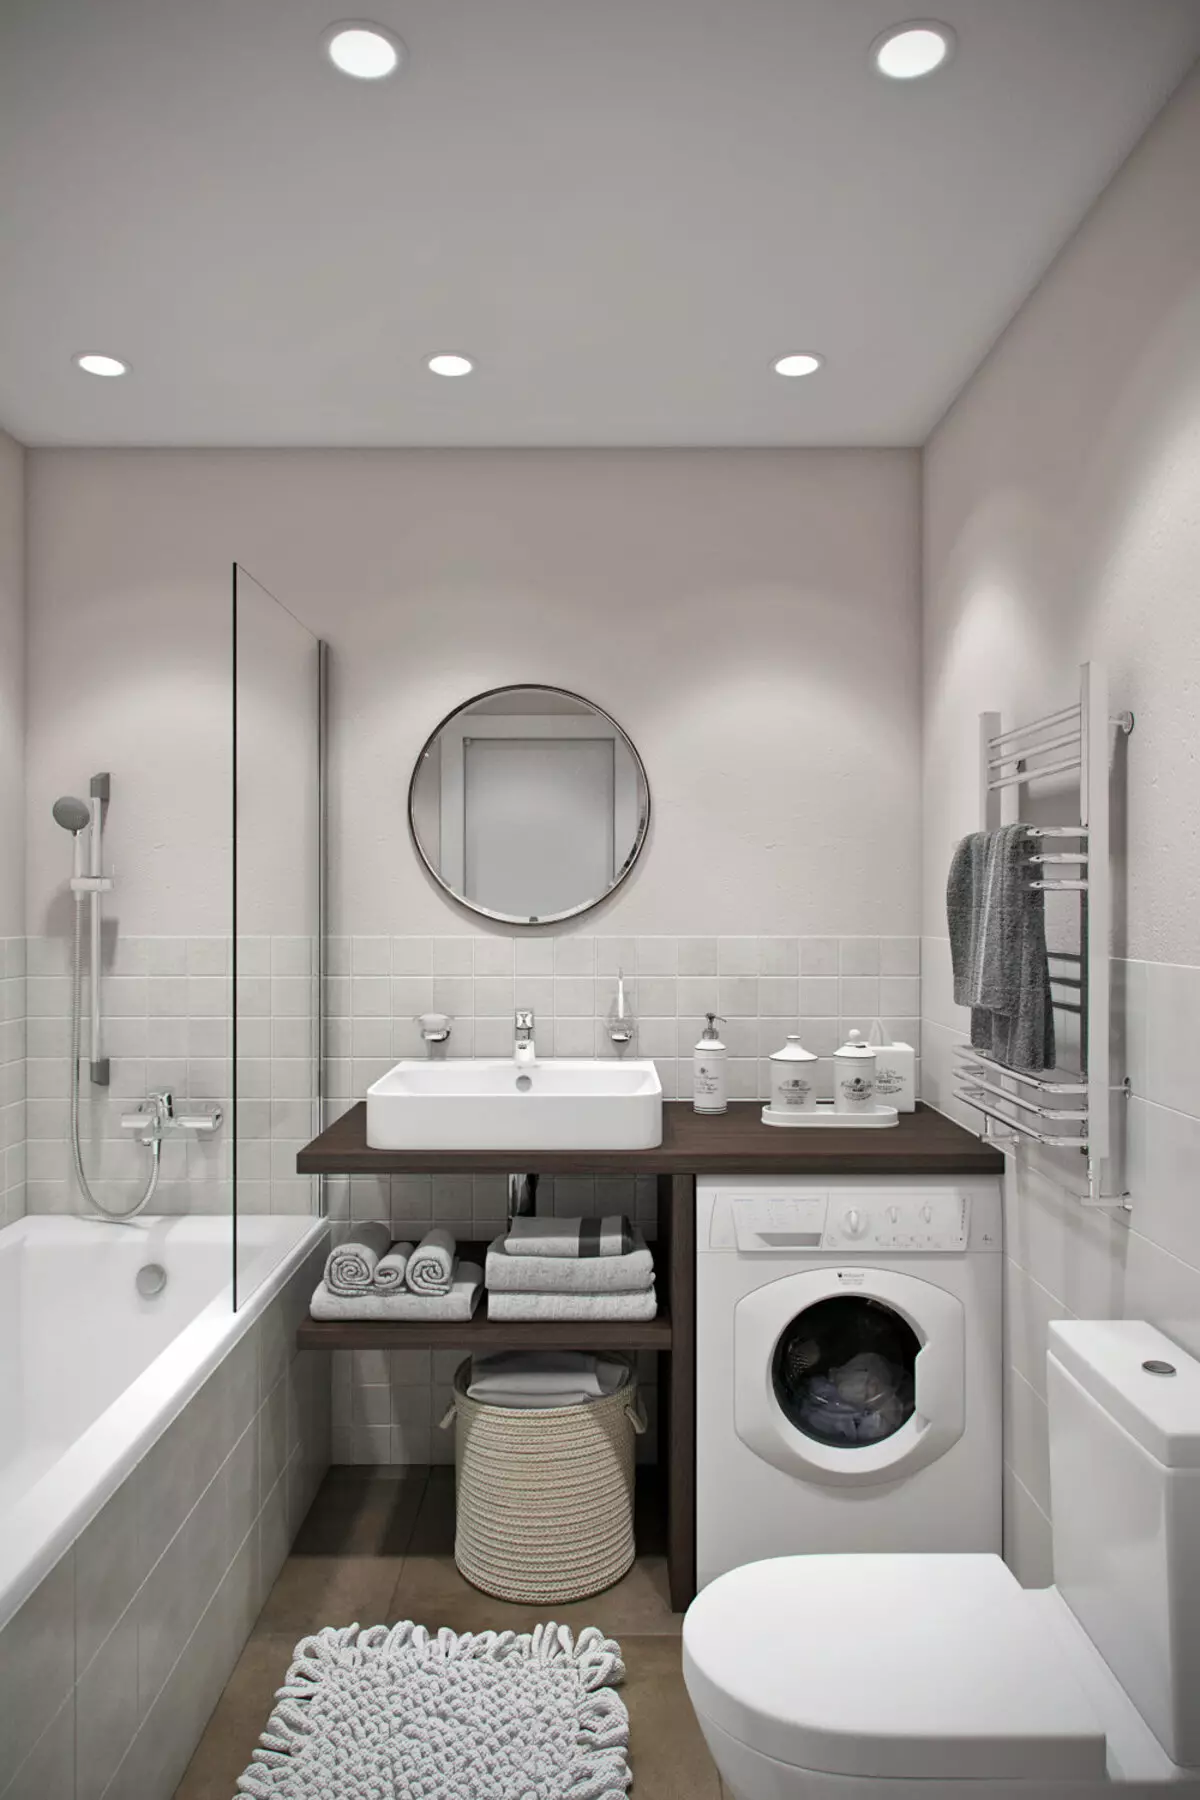 Badkamerontwerp gecombineerd met 3e vierkant toilet. M (76 foto's): Binnenkant van de interieur met een wasmachine, een kleine kamer leggen 10068_6